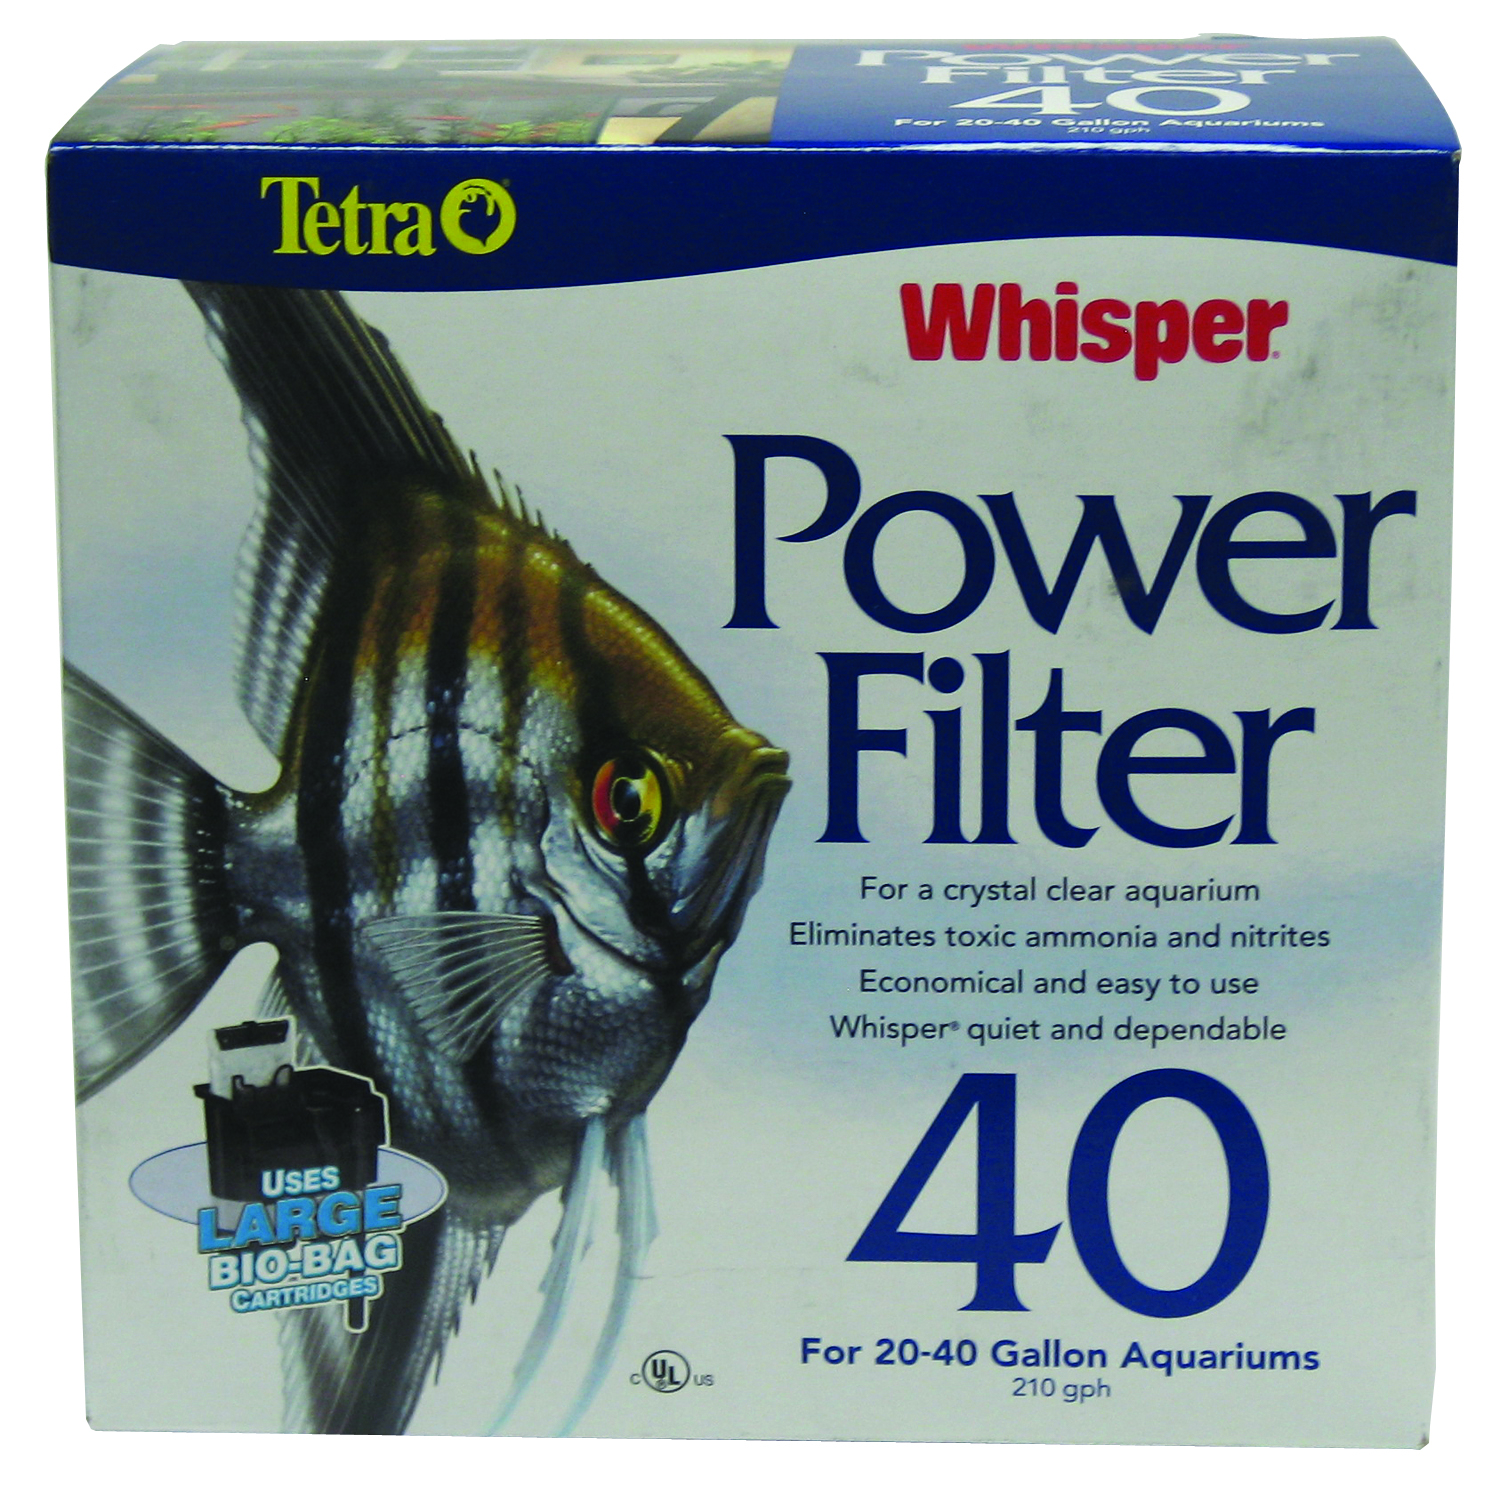 WHISPER POWER FILTER 40